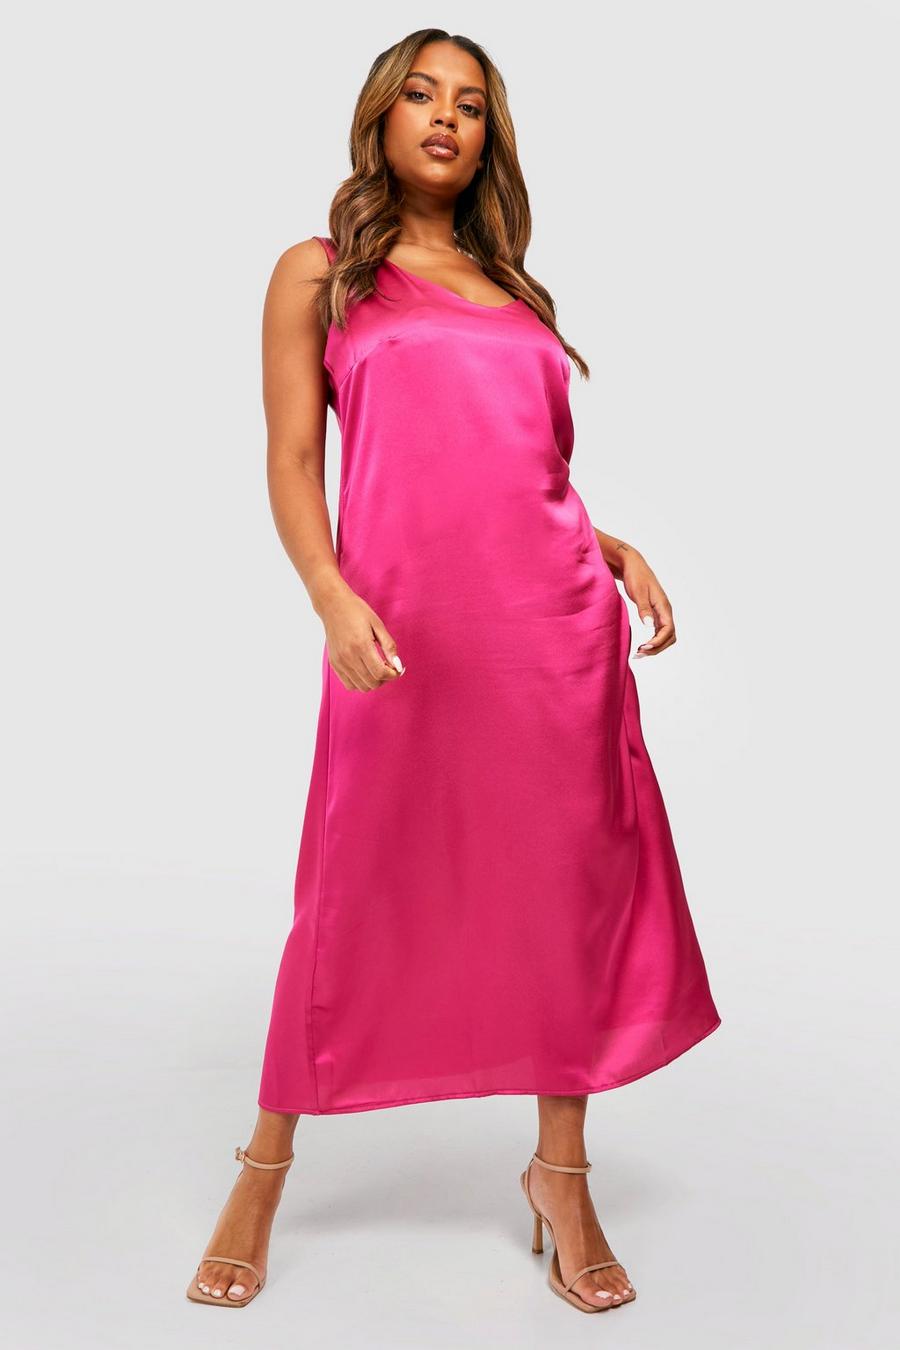 Grande taille - Robe nuisette satinée à bretelles épaisses, Hot pink